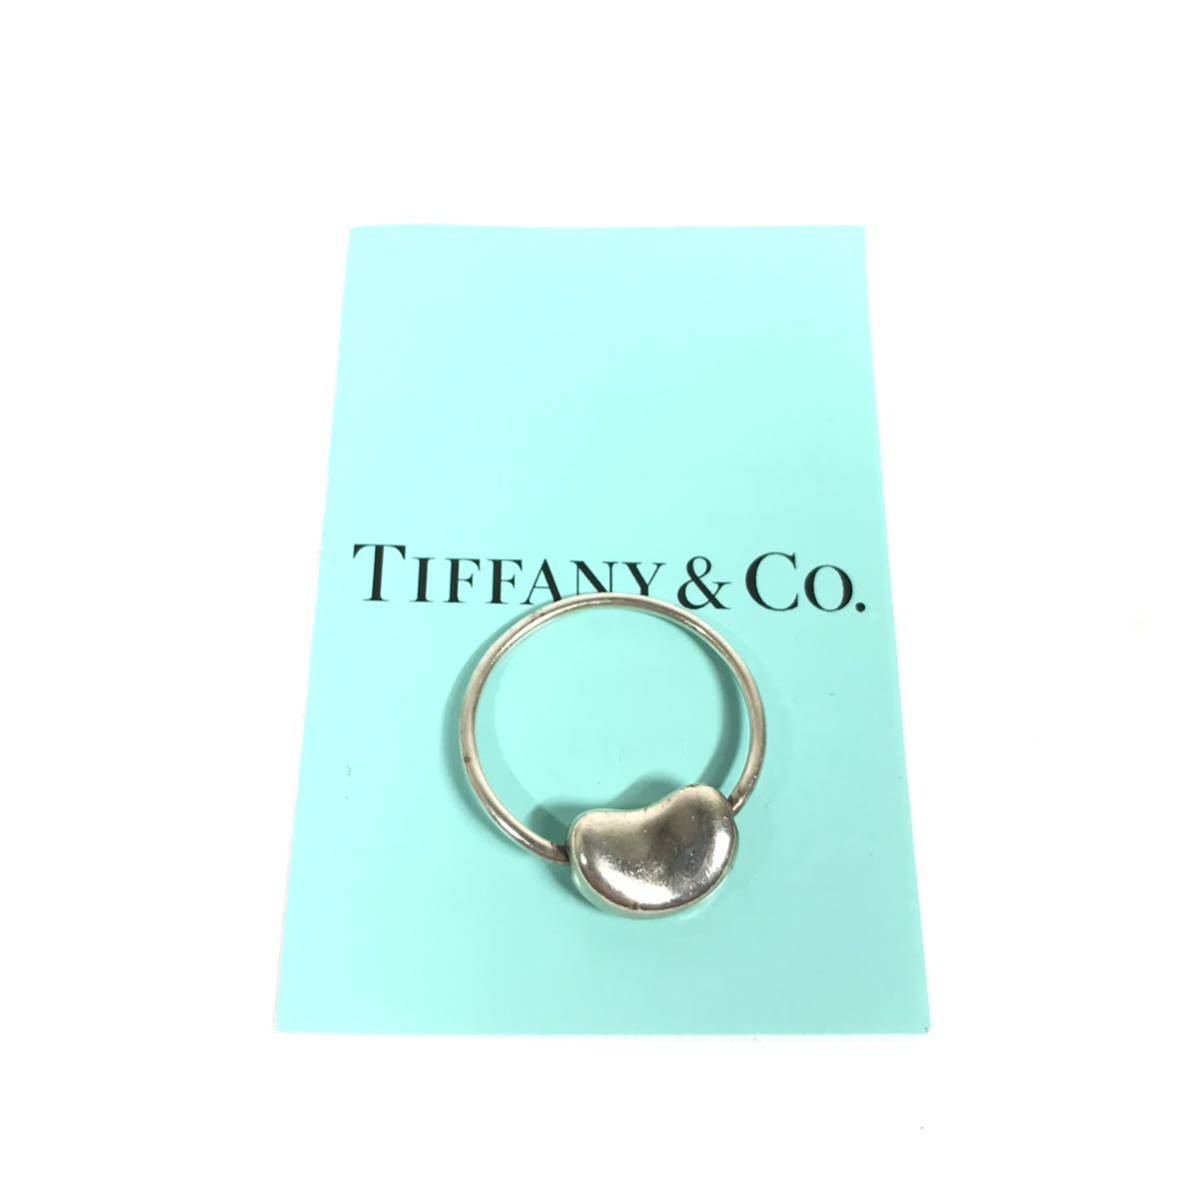 【ティファニー】本物 TIFFANY&Co. 指輪 ビーン シルバー925 サイズ11号 リング メンズ レディース アクセサリー 送料370円